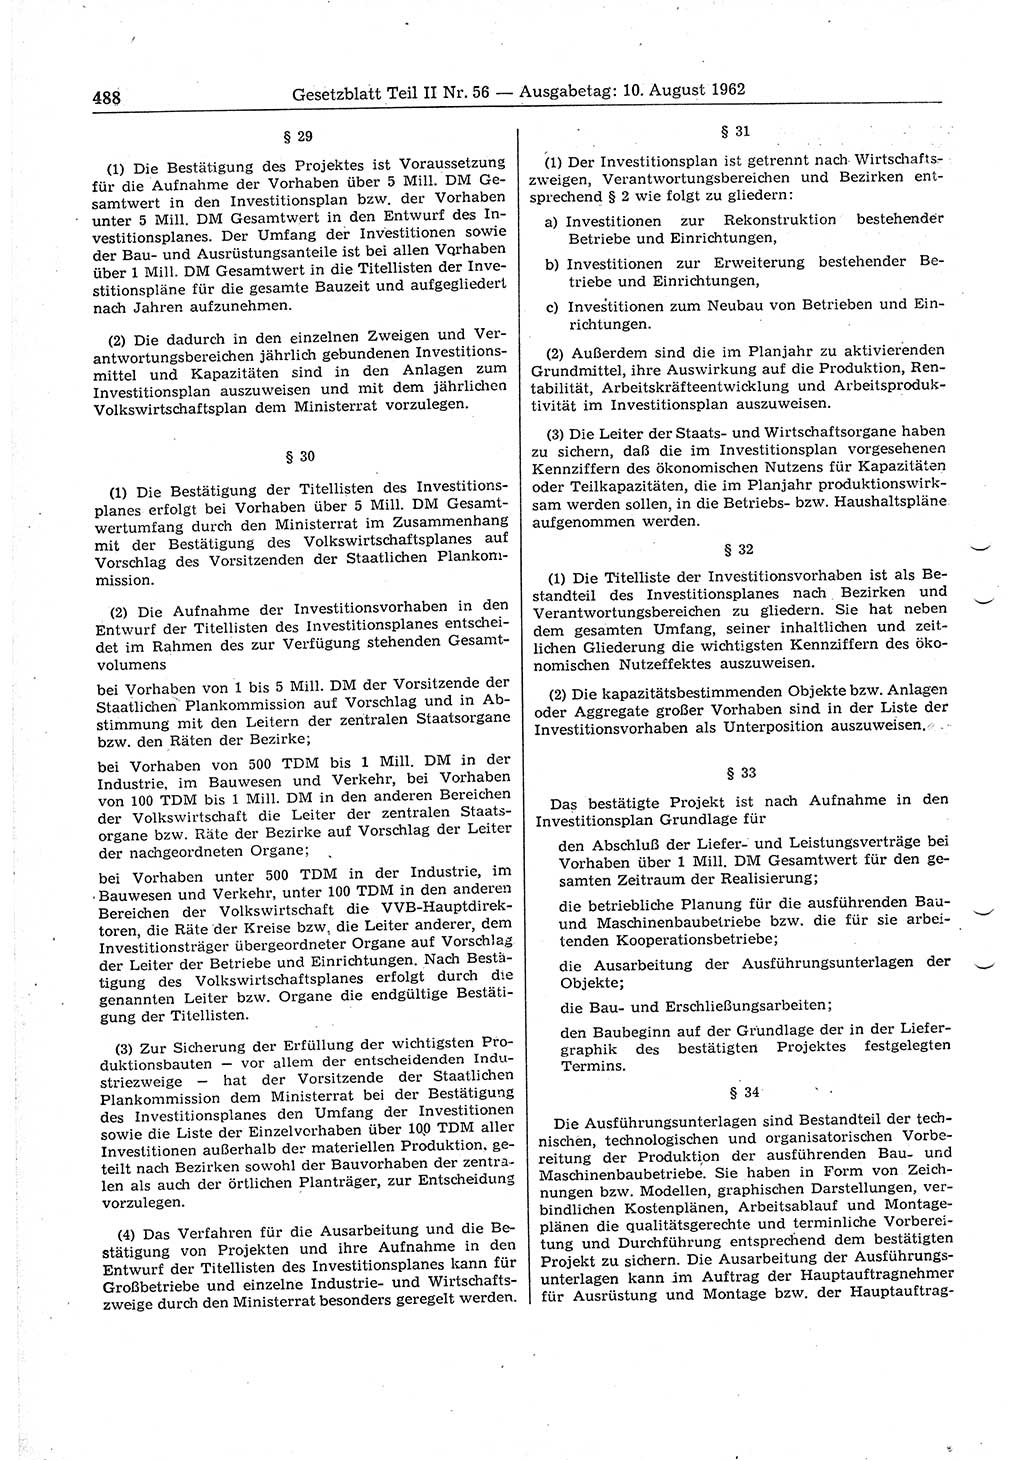 Gesetzblatt (GBl.) der Deutschen Demokratischen Republik (DDR) Teil ⅠⅠ 1962, Seite 488 (GBl. DDR ⅠⅠ 1962, S. 488)